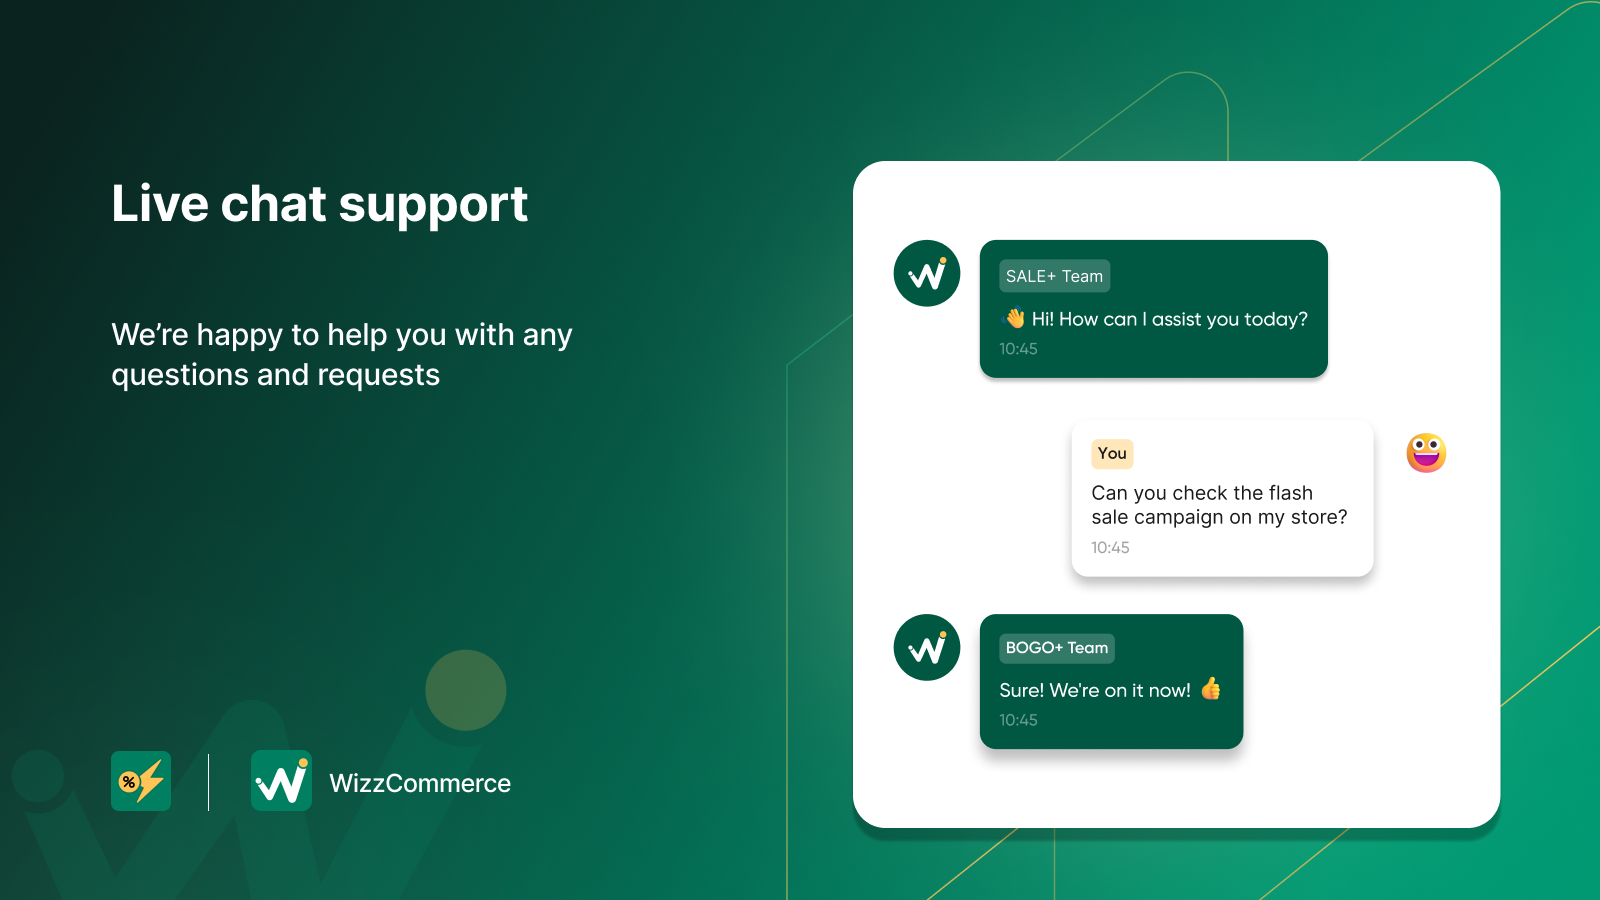 WizzCommerce ofrece soporte de chat en vivo los 7 días de la semana